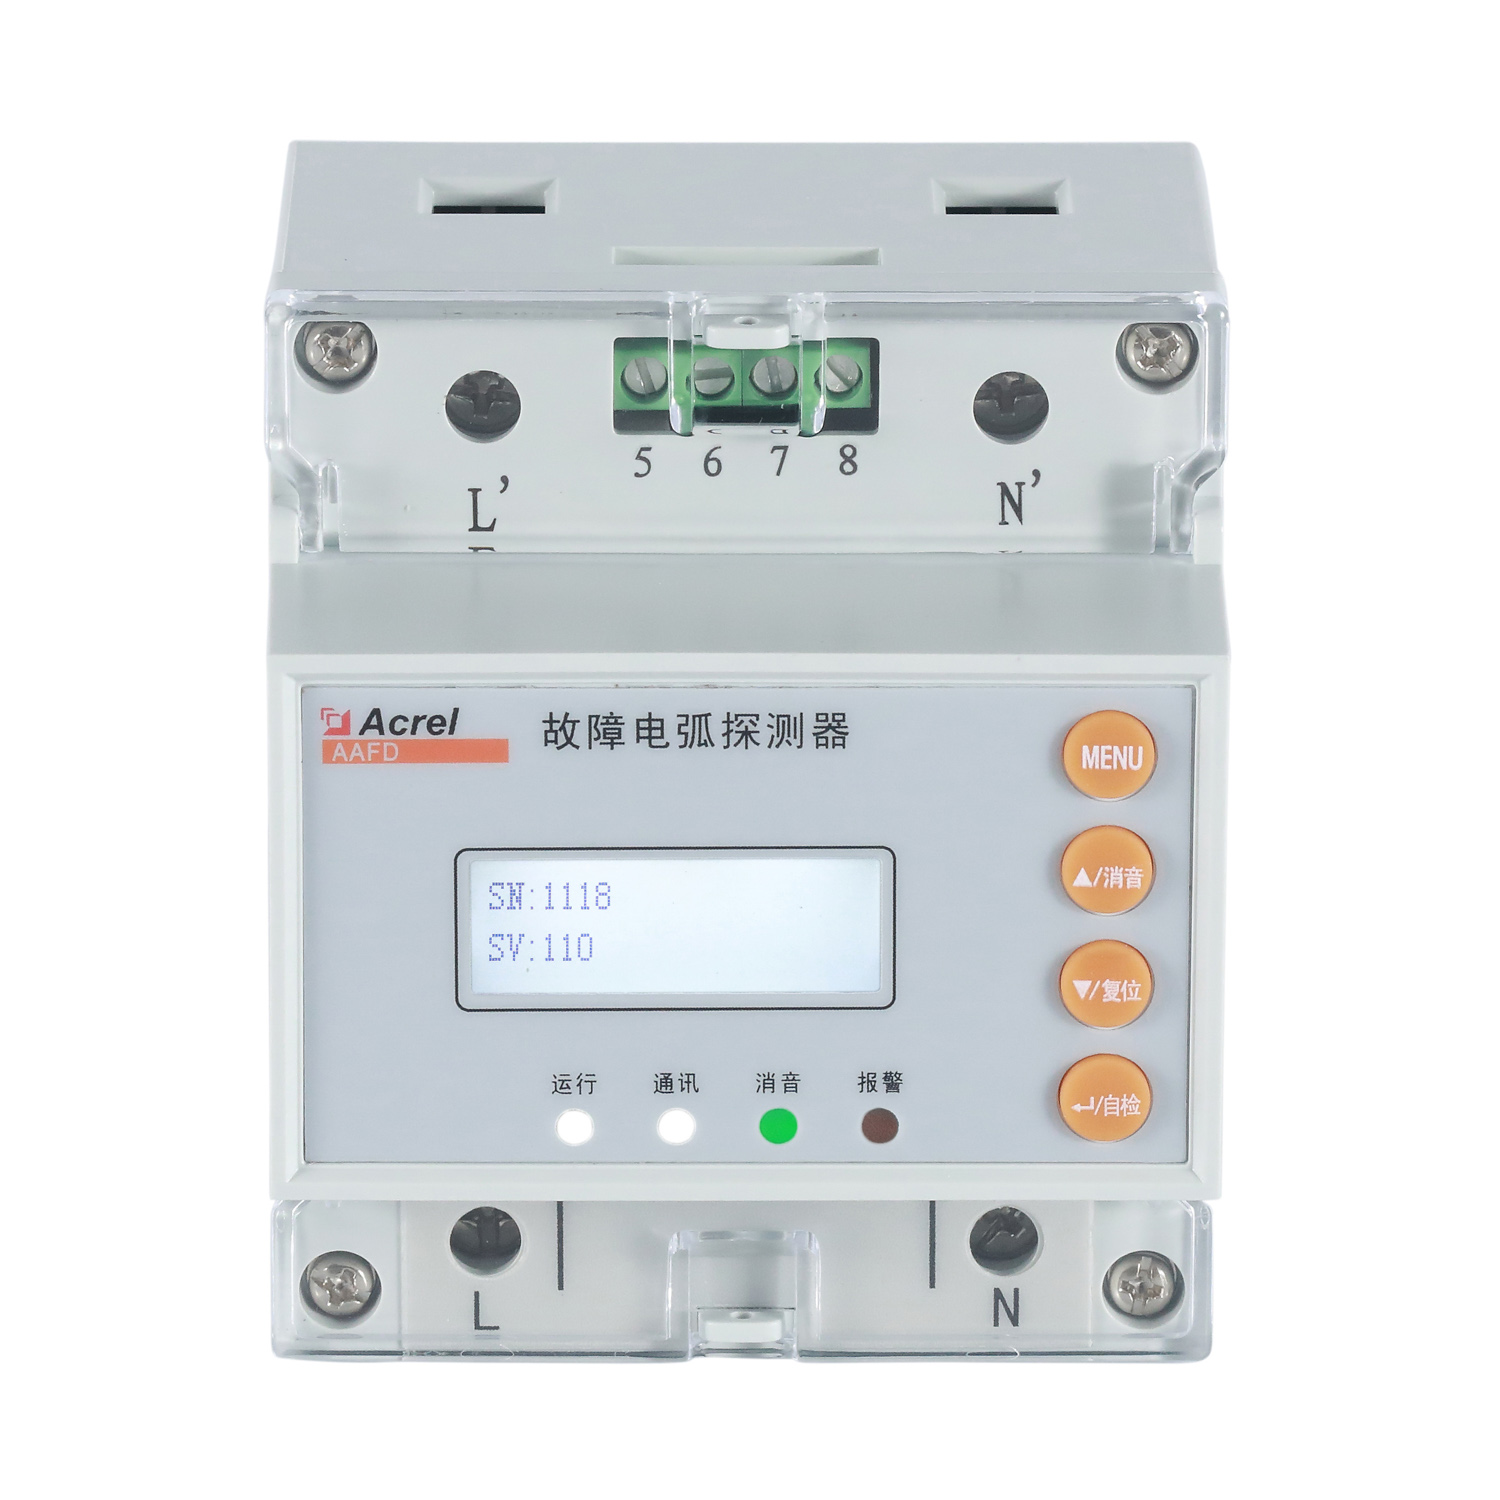 安科瑞 AAFD-40 故障电弧探测器 一路继电器输出 485通讯 导轨式安装 液晶显示 额定电流检测范围0-40A